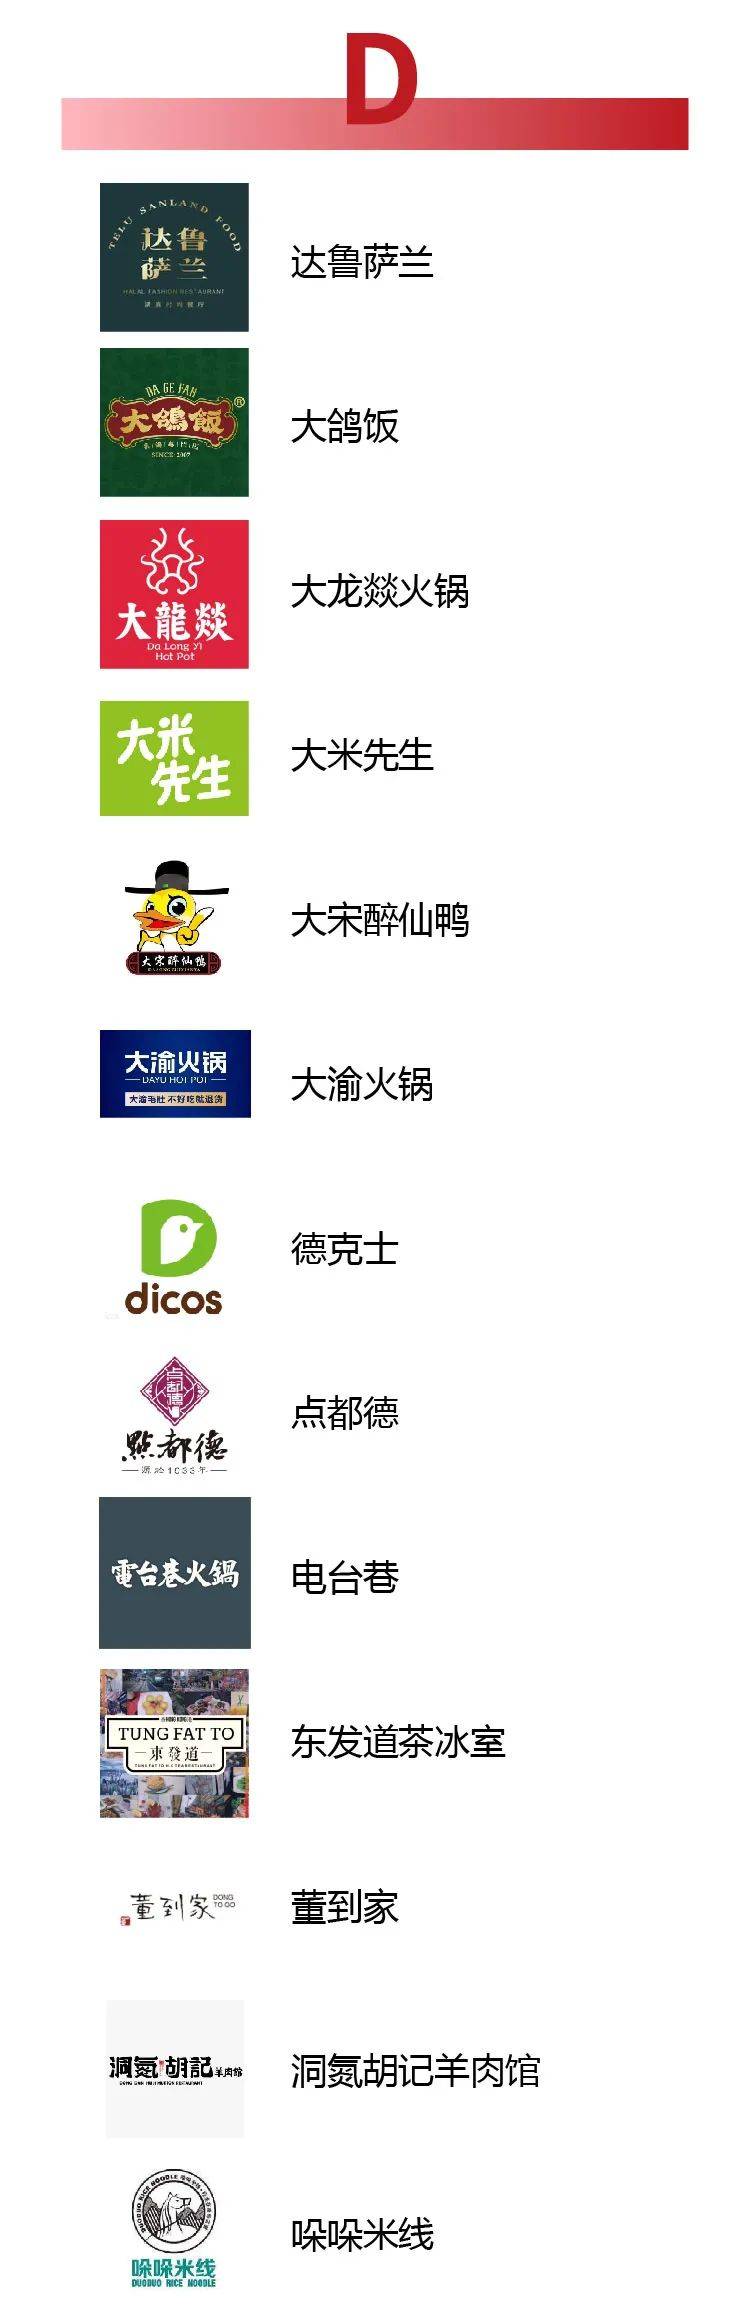 180个品牌入围中国餐饮创新力100终极评选名单